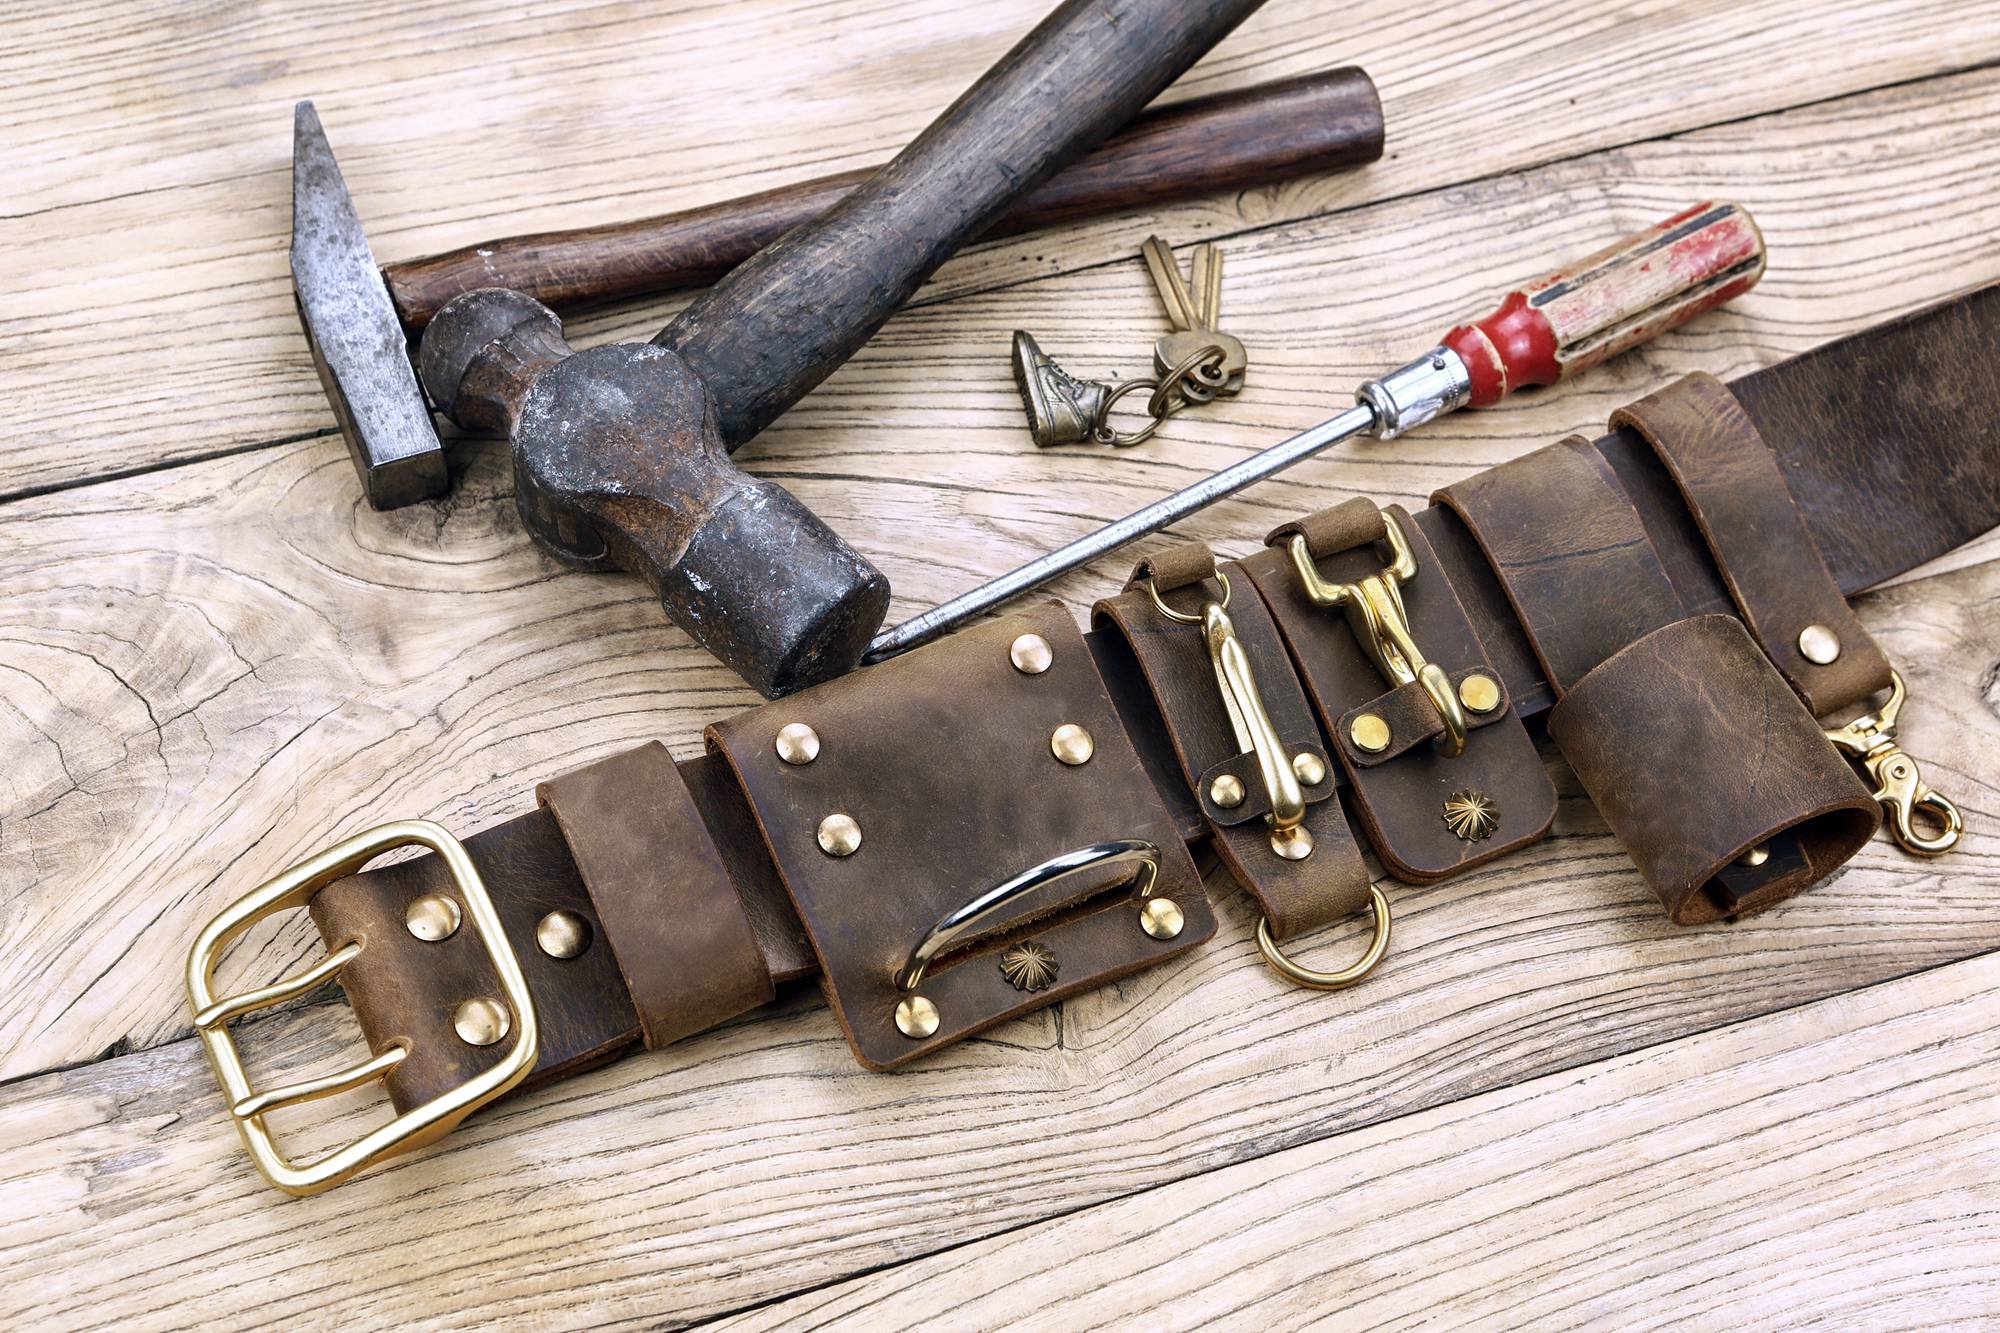 Leather Tool Belt Men,leather Tool Belt Carpenter,leather Tool Belt  Pouch,leather Tool Belt Bag,leather Tool Belt Custom 